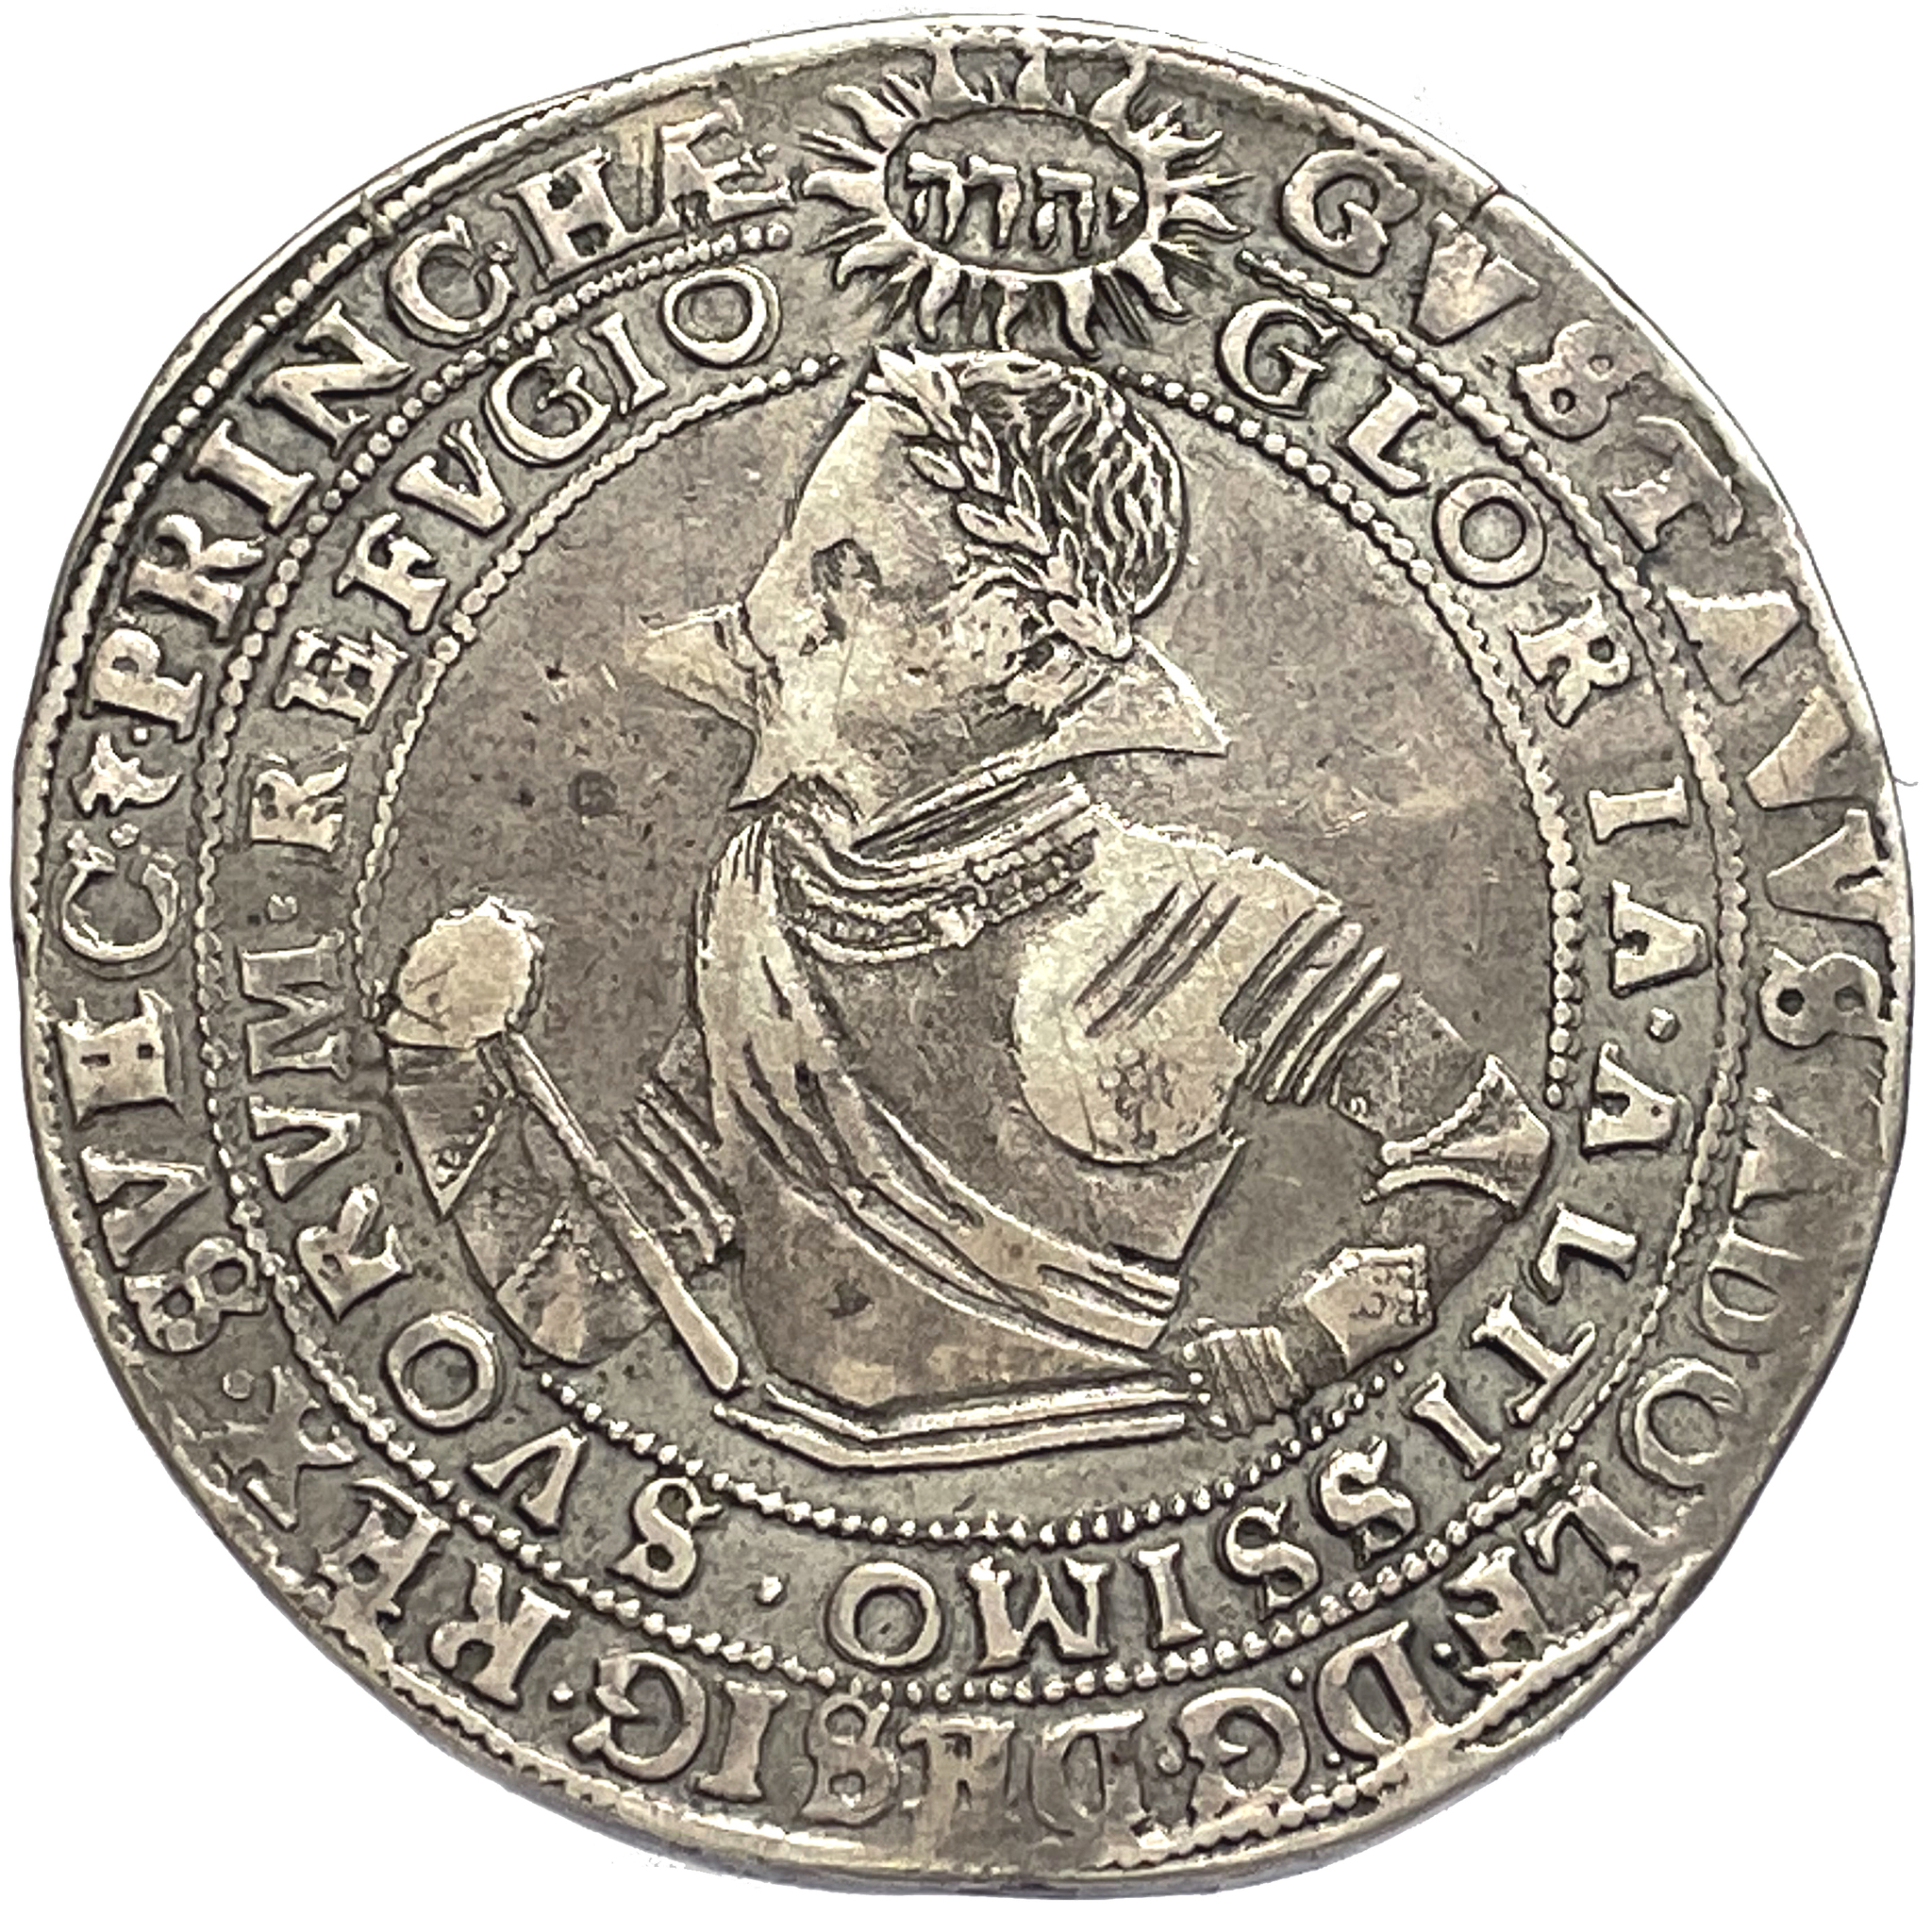 Gustav II Adolf - Stockholm - 8 Mark 1617 - MYCKET VACKERT EXEMPLAR - med omskrift "PRINC·HÆ"